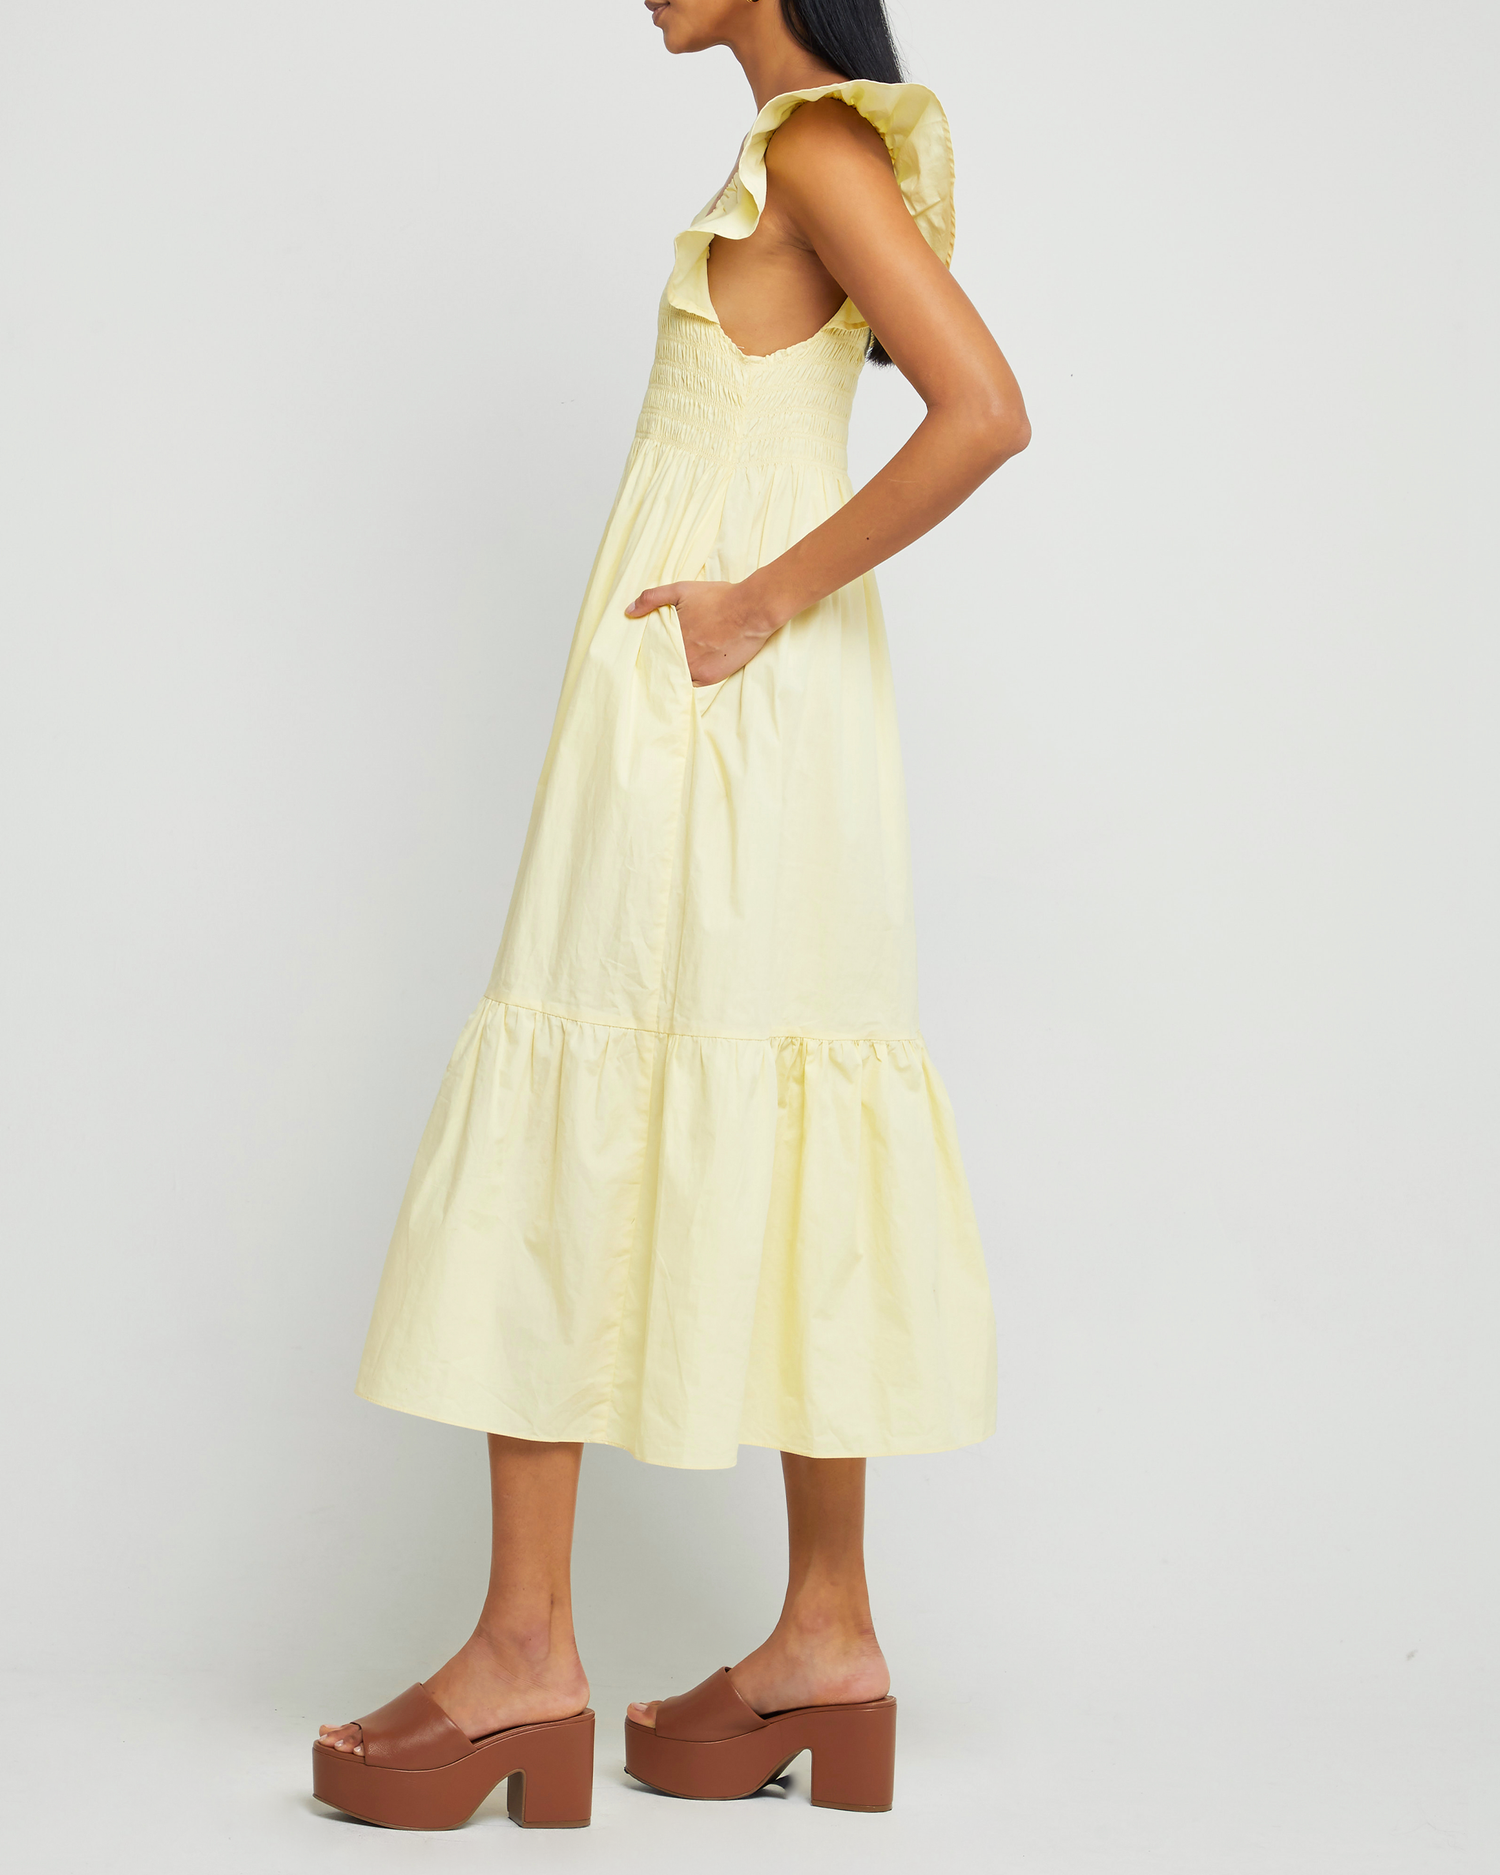 Third image of Tuscany Dress, a yellow midi dress, smocked bodice, ruffled cap sleeves, pockets